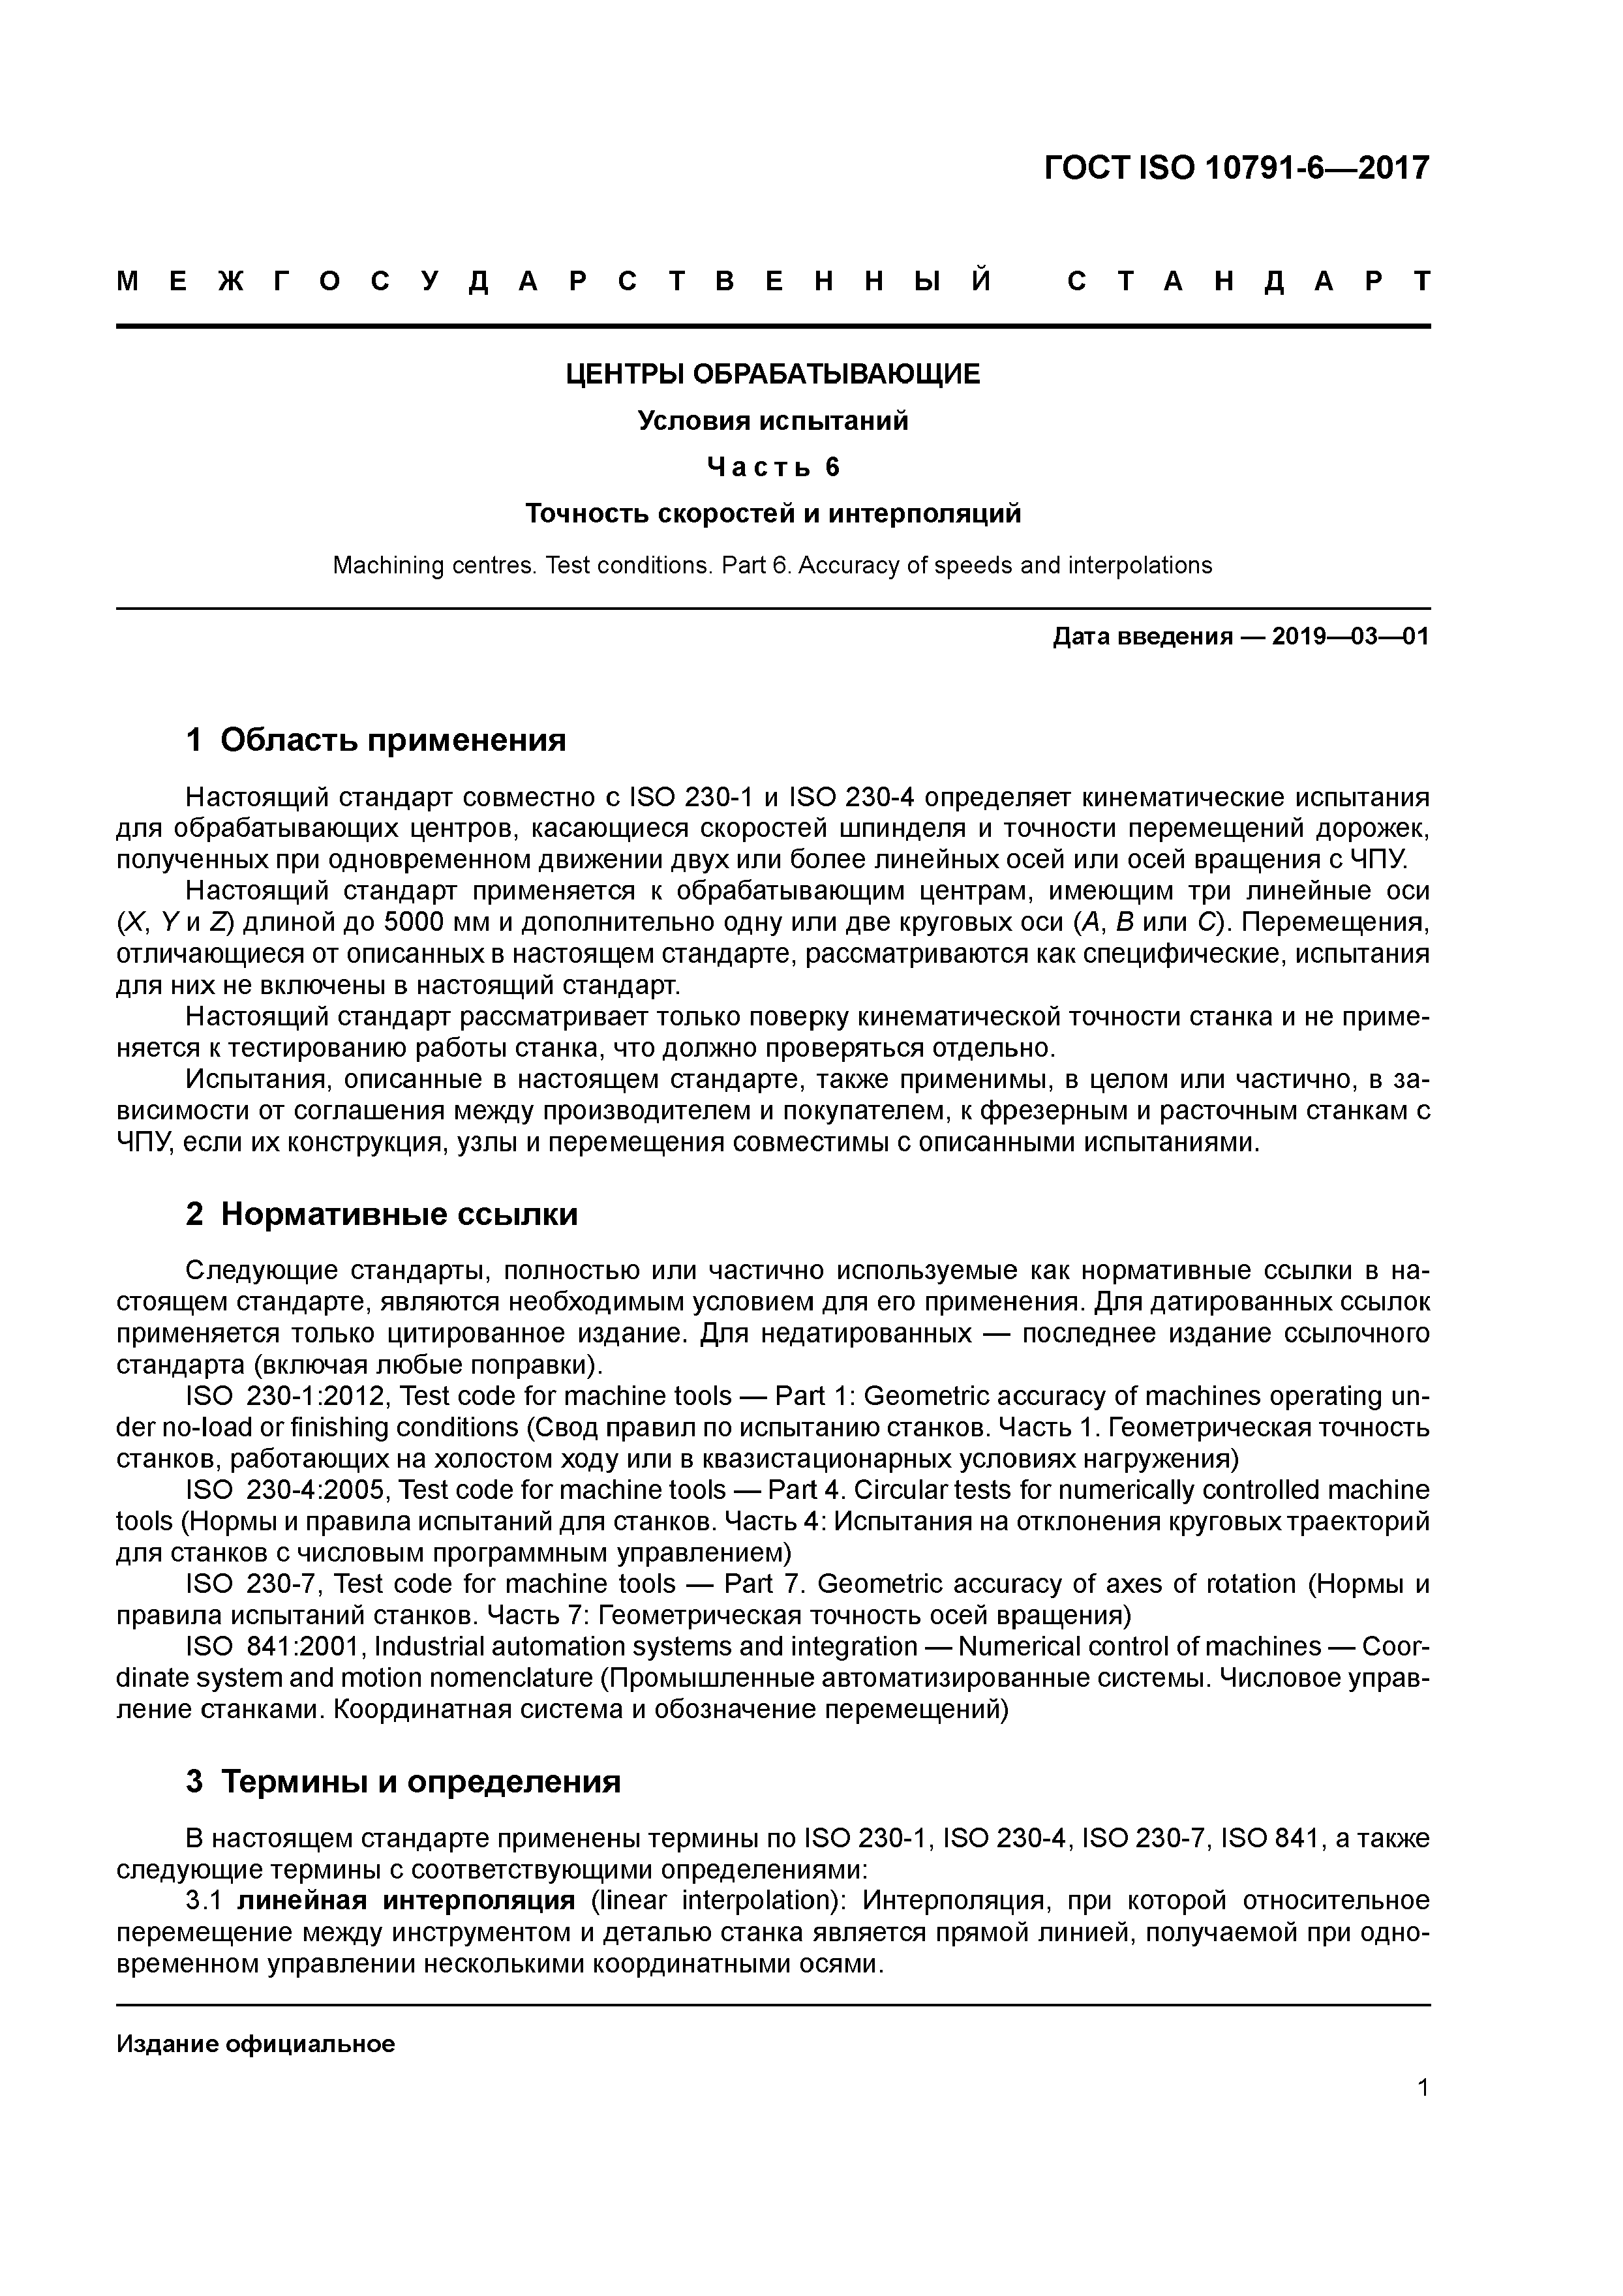 ГОСТ ISO 10791-6-2017